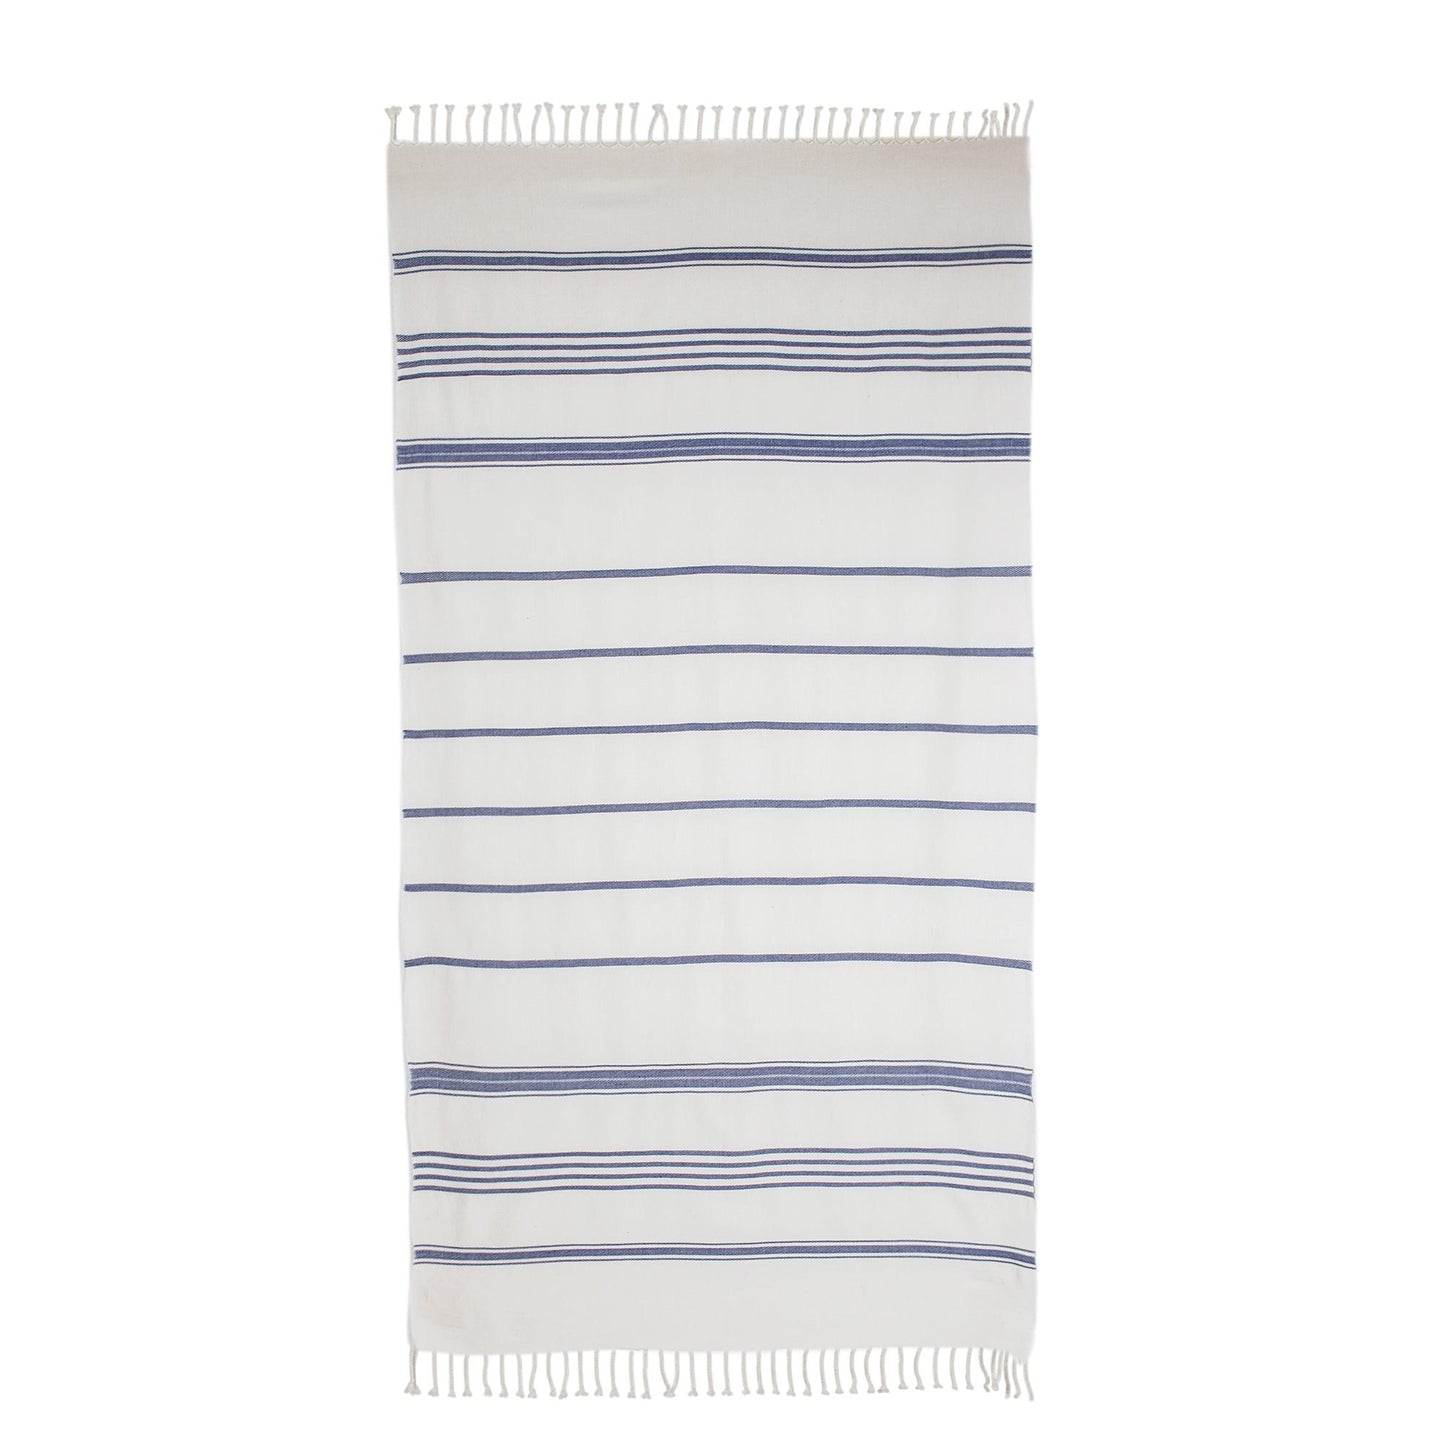 Sweet Relaxation in Snow White Snow White Cotton Beach Towel with Indigo Stripes